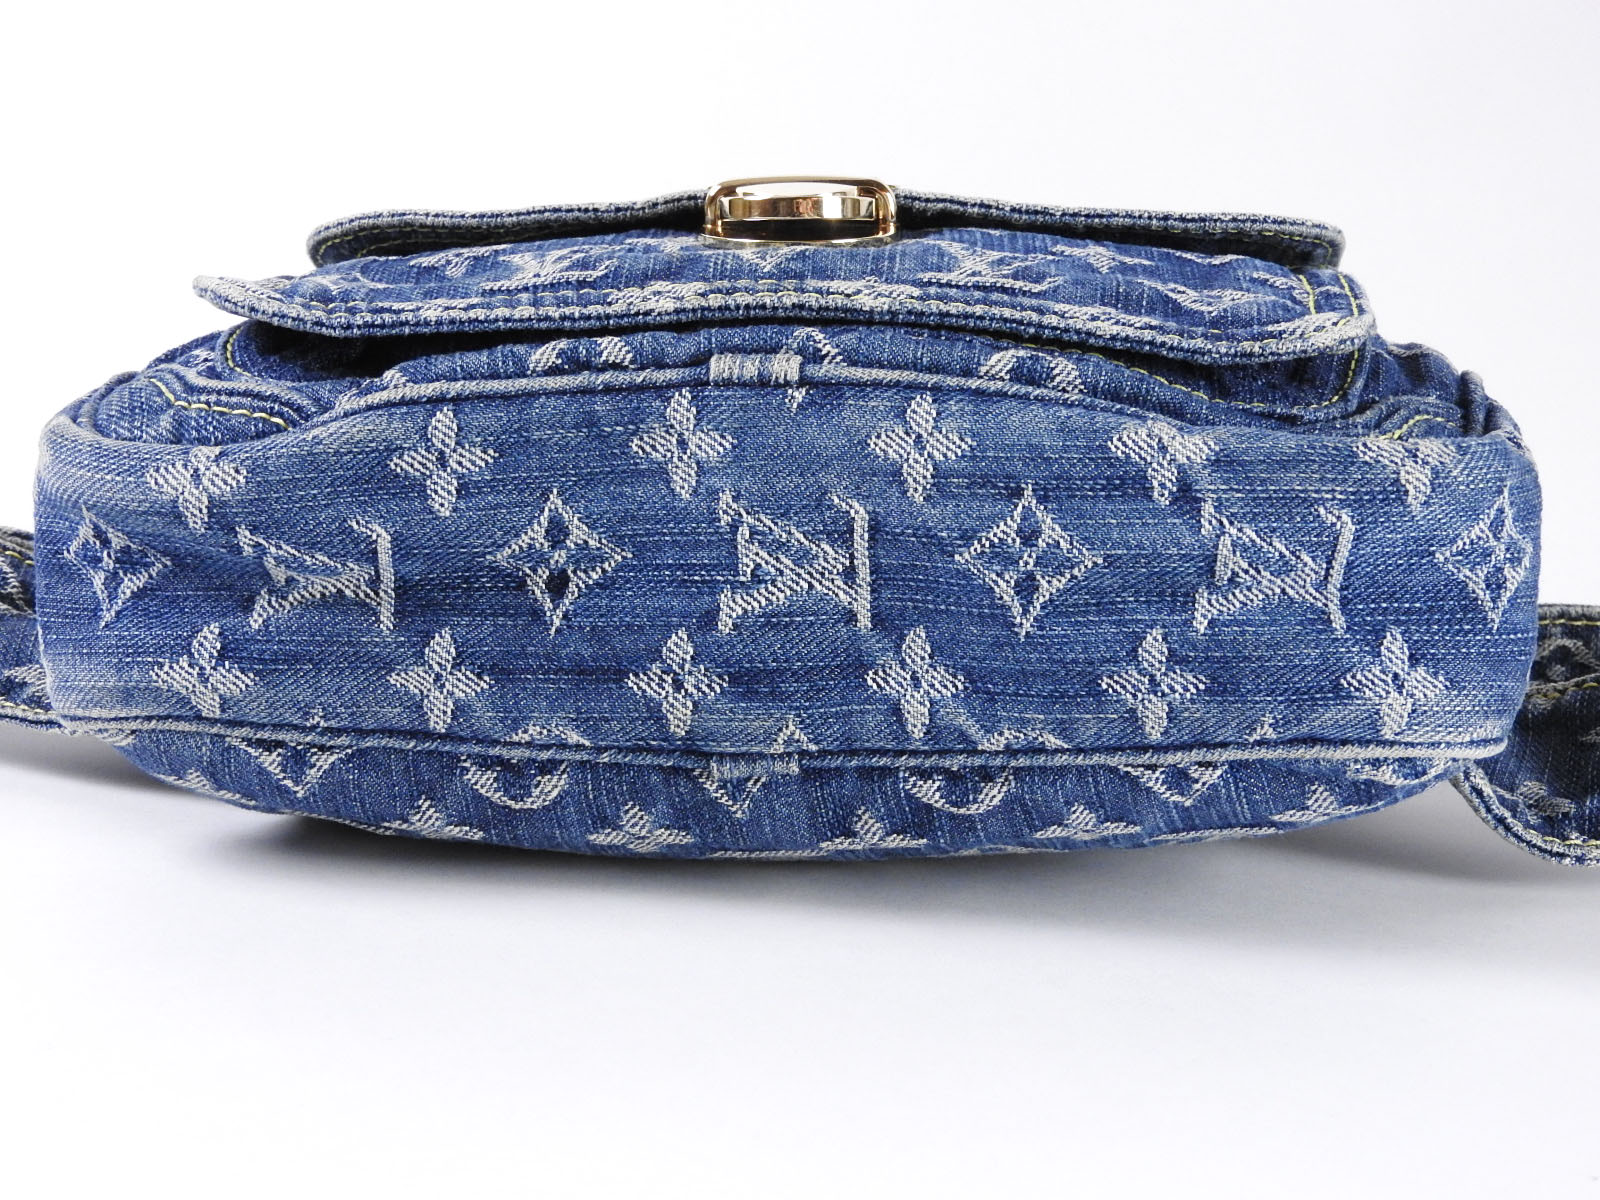 Authentic LOUIS VUITTON Bum Bag Waist Bag Monogram Denim Blue M95347 A-3865 | eBay